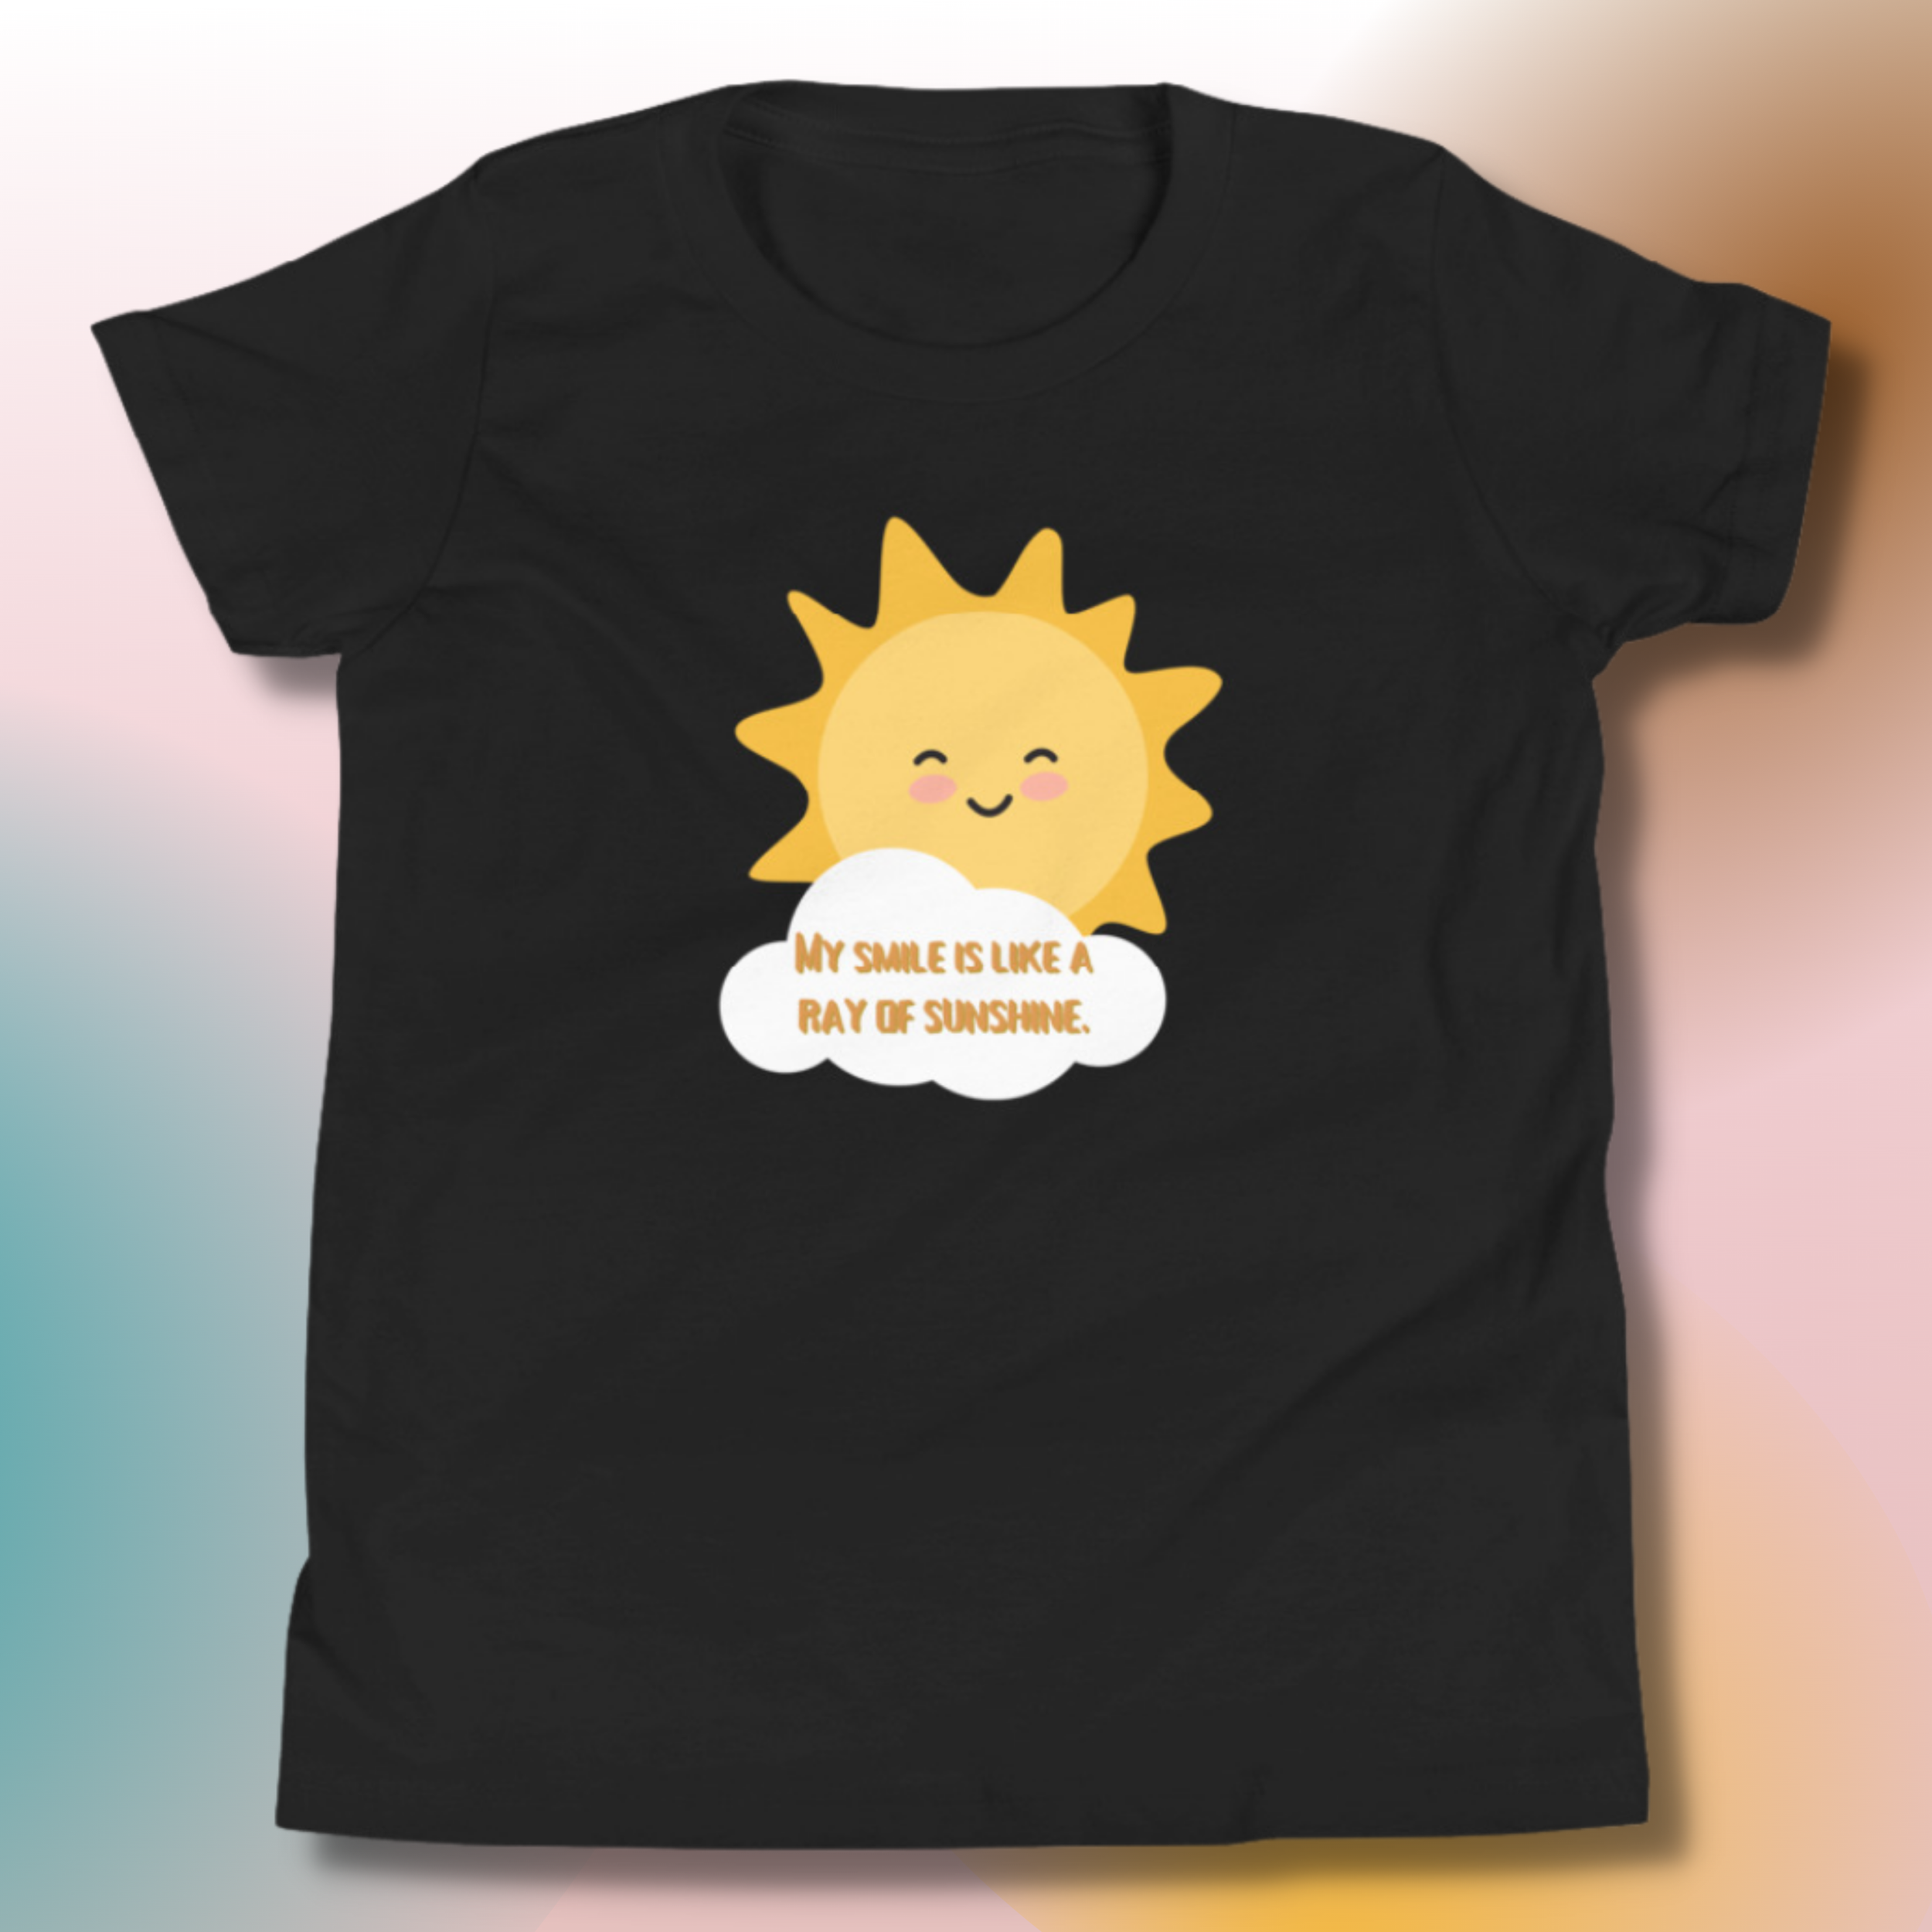 Udsigt skjorte retort Ray of Sunshine" T-shirt Designed by LTButler — LT Butler